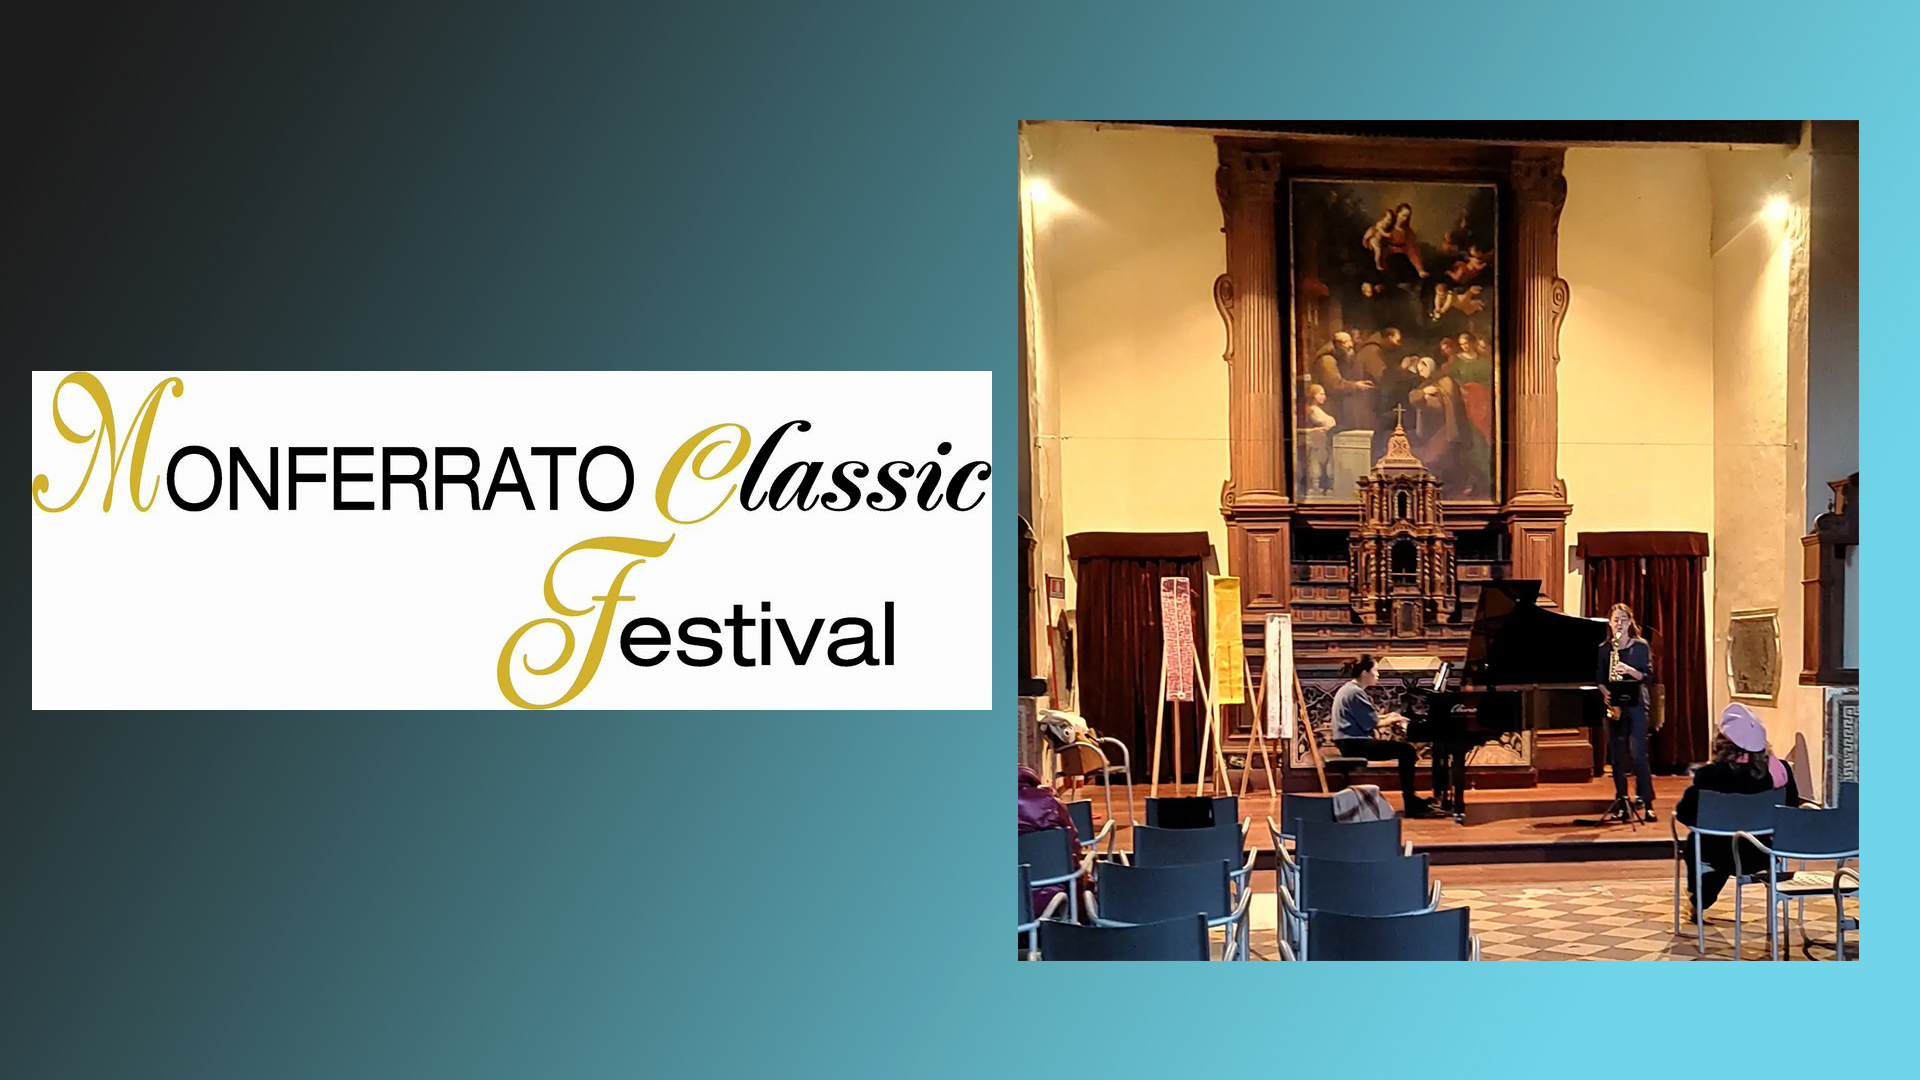 Monferrato Classic Festival: proseguono gli appuntamenti all’Auditorium Santa Chiara